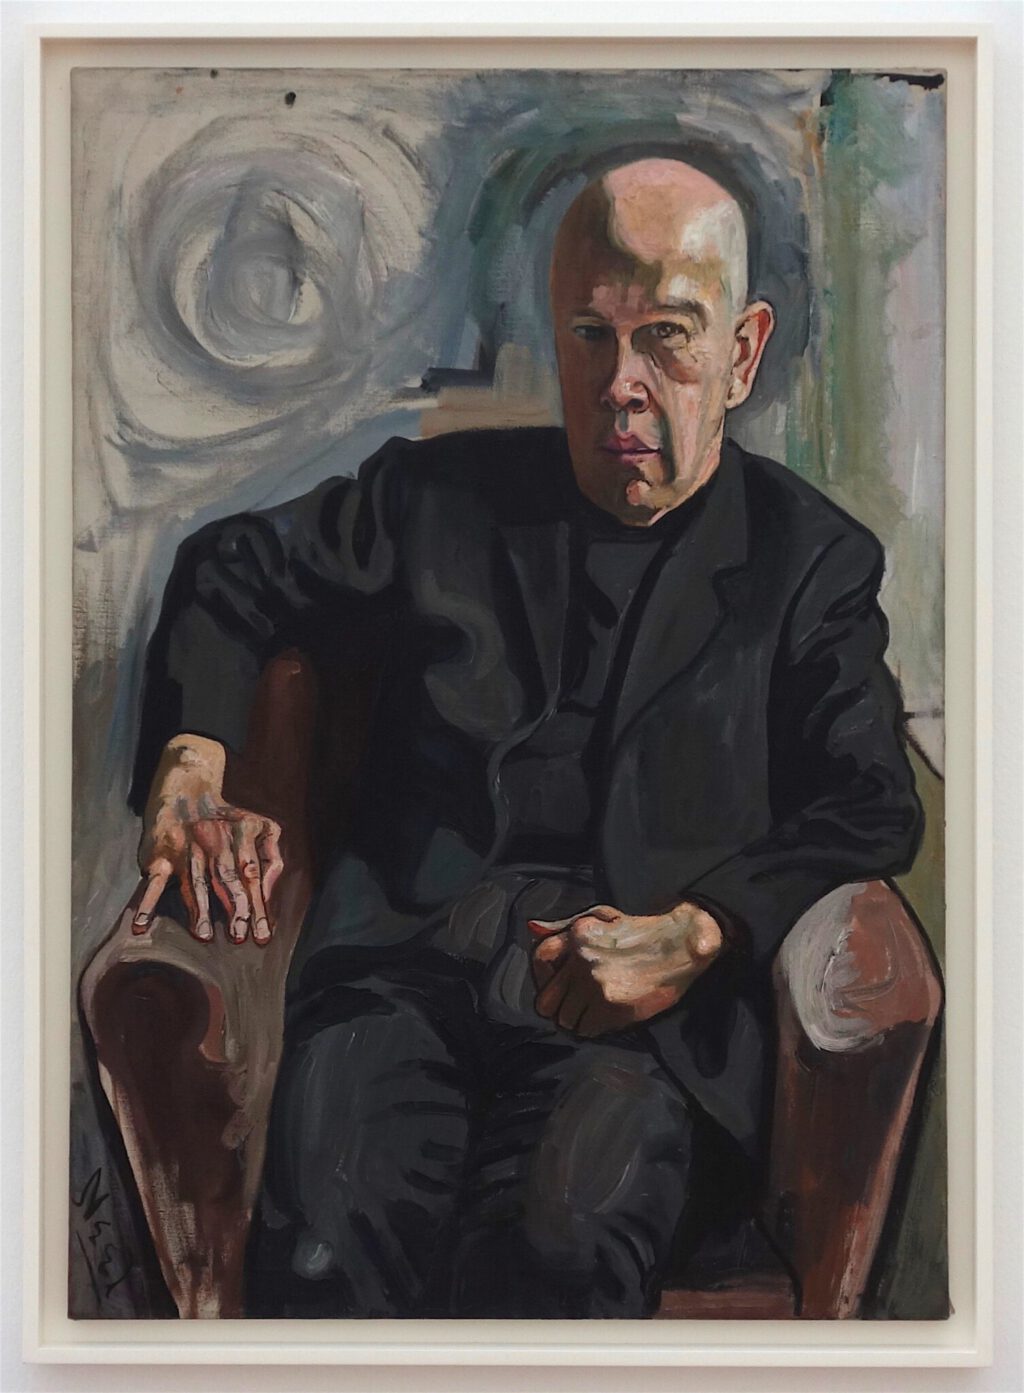 アリス・ニール「マックス・ホワイト」油絵、101.9 x 71.6 センチ、1961年